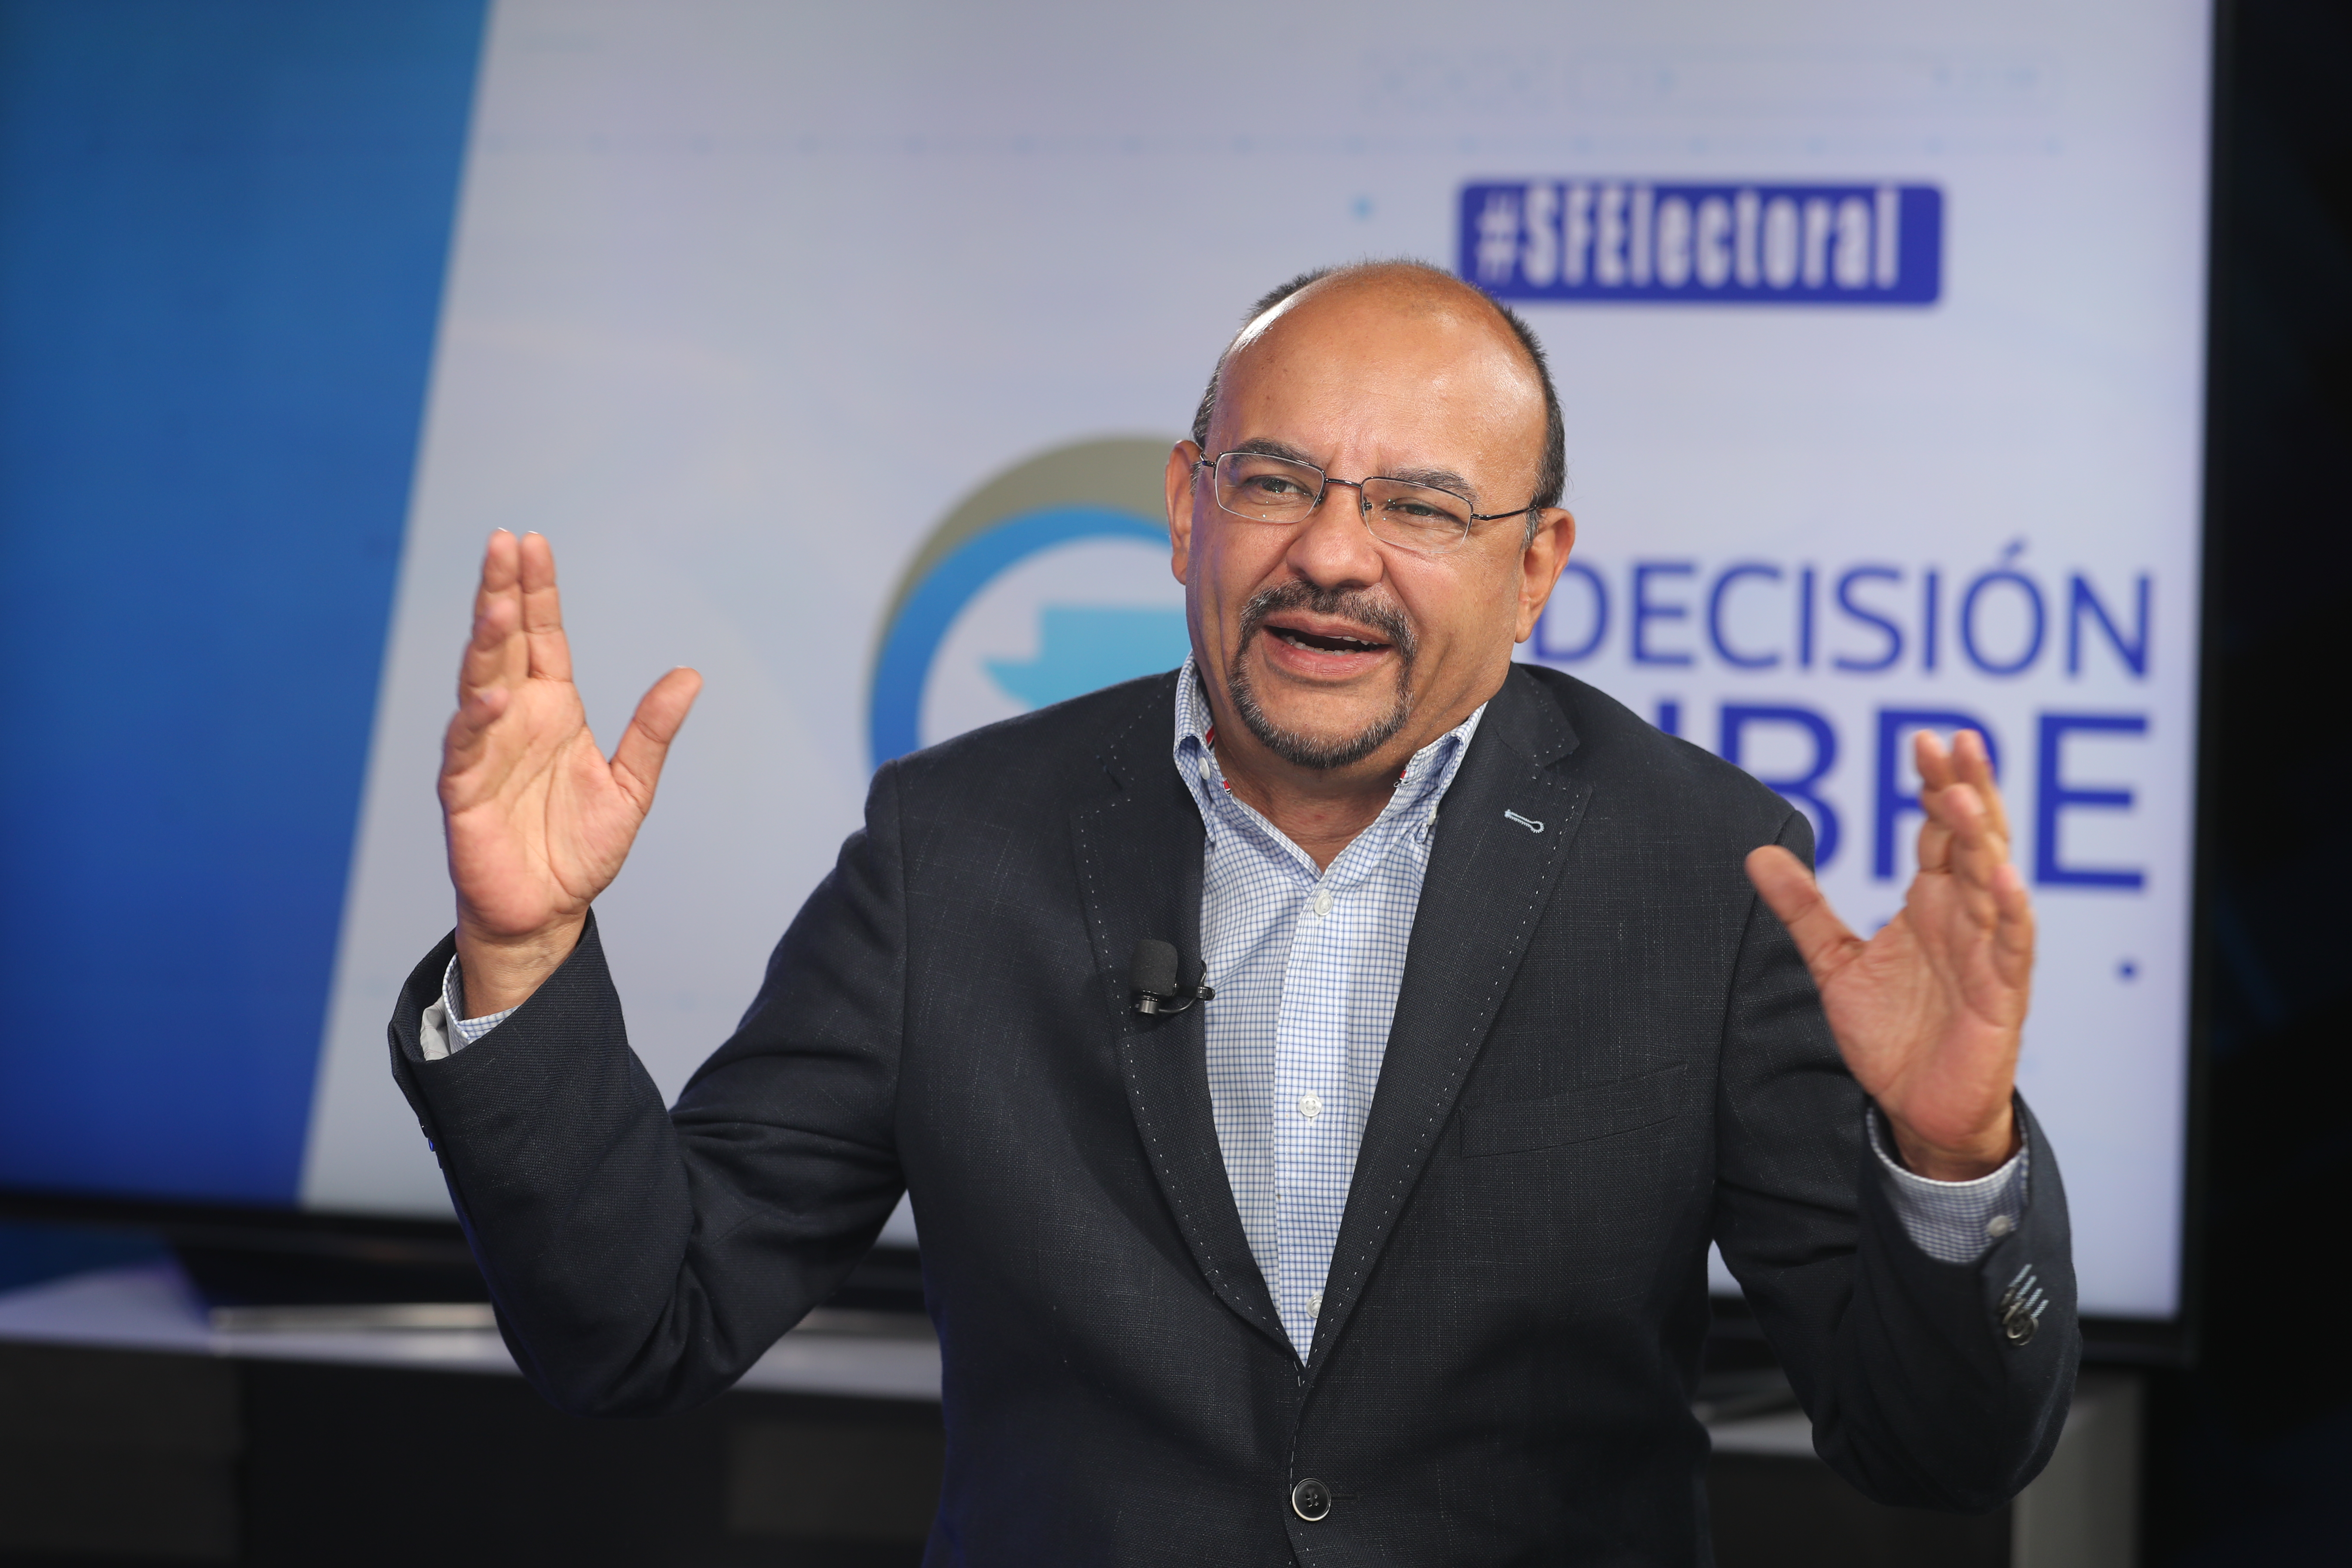 Manfredo Marroquín, candidato presidencial de Encuentro por Guatemala, en Sin Filtro Electoral. (Foto Prensa Libre: Érick Ávila)